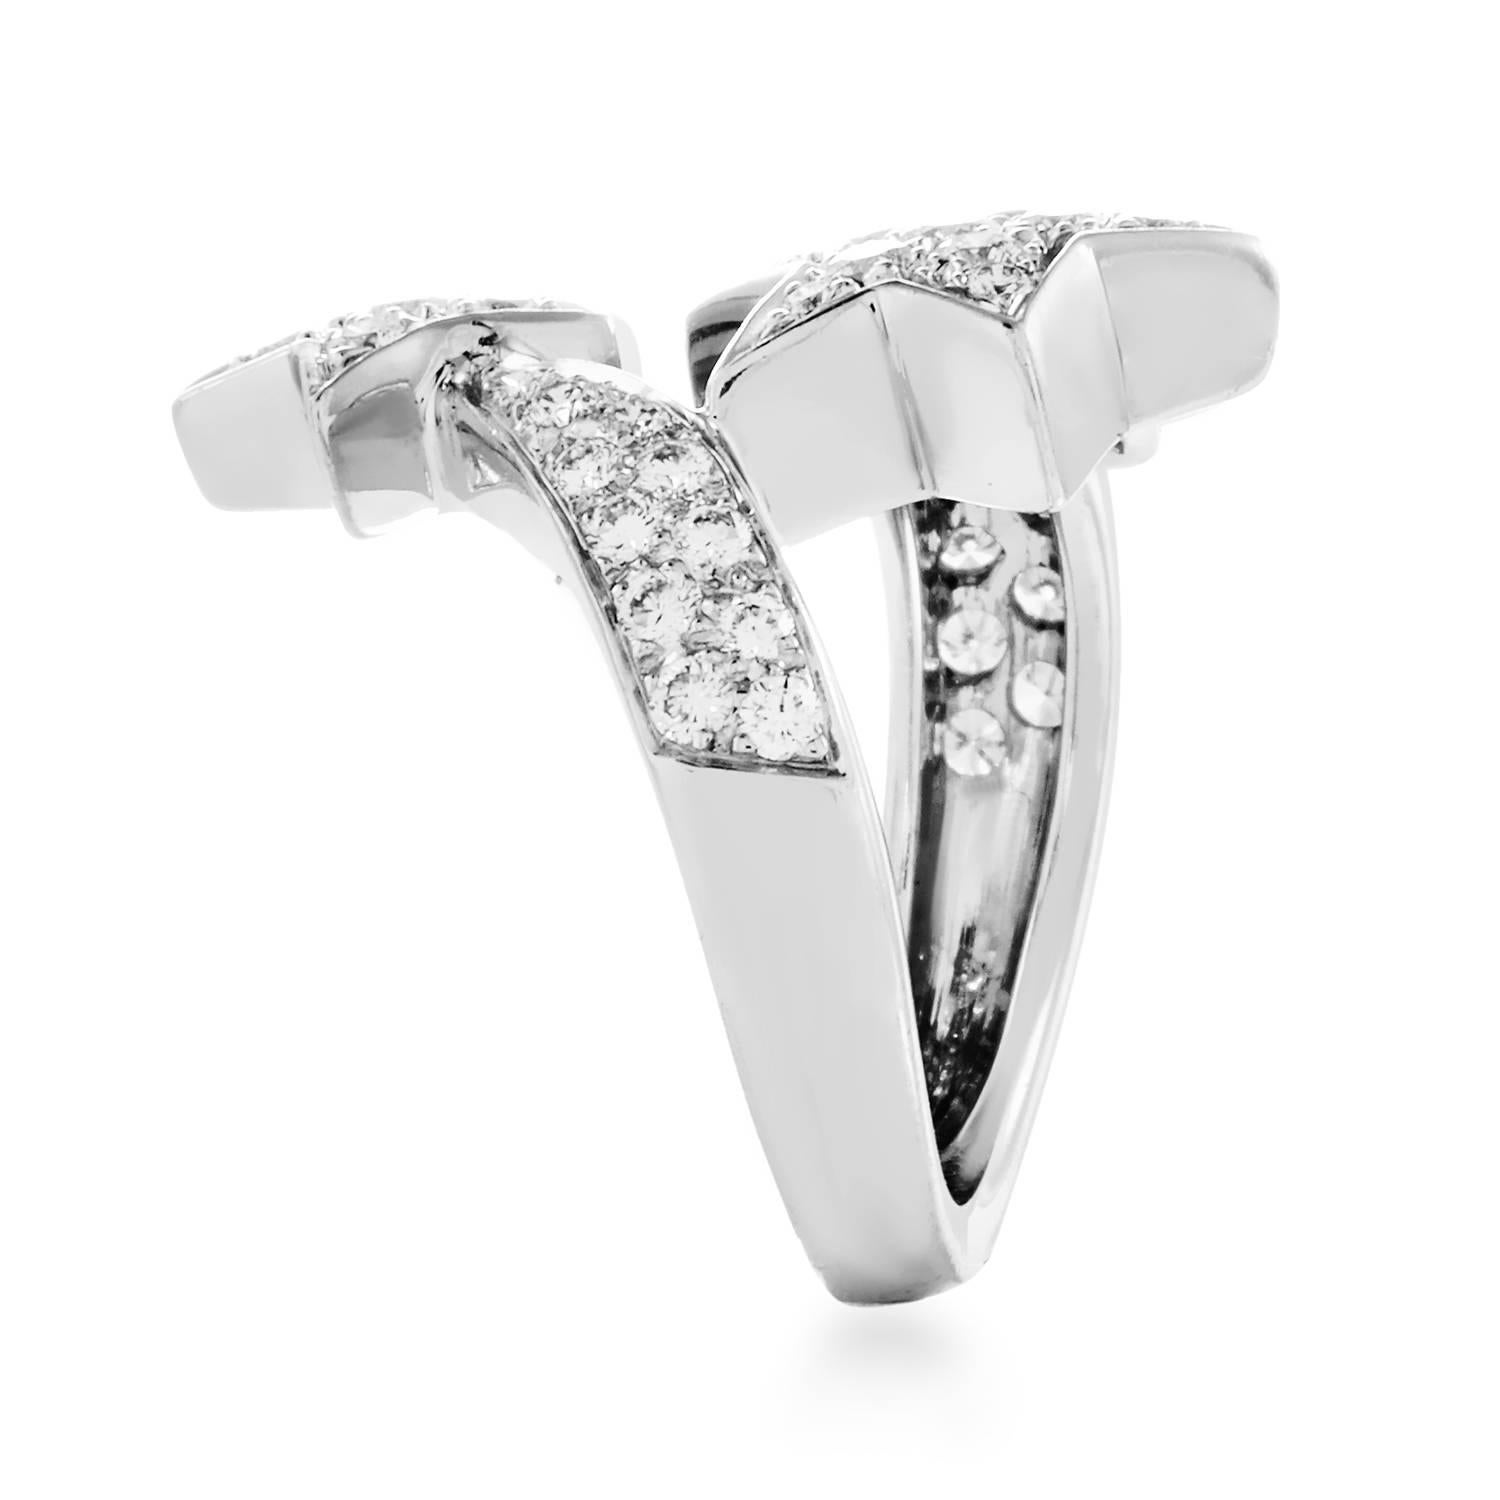 Chanel präsentiert eines seiner berühmtesten Markenzeichen in einer wunderbar leuchtenden Fassung: diesen erstaunlichen Ring mit zwei Kometenmotiven aus schimmerndem 18-karätigem Weißgold:: besetzt mit glänzenden Diamanten der Farbe E und der